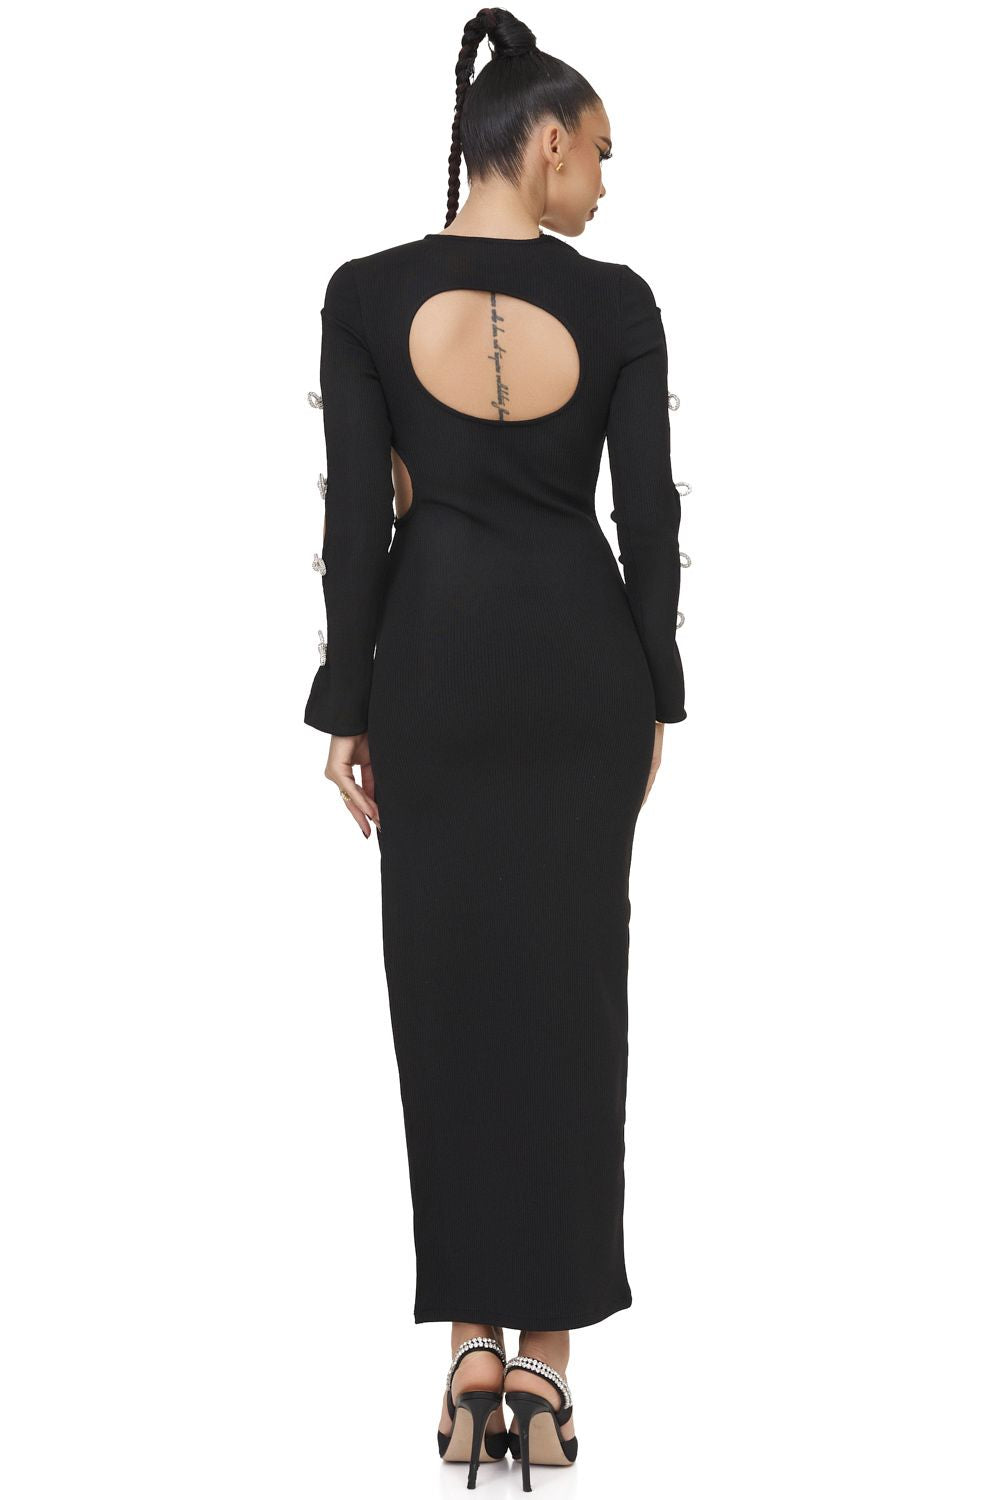 Дамска елегантна черна миди рокля Desilia Bogas